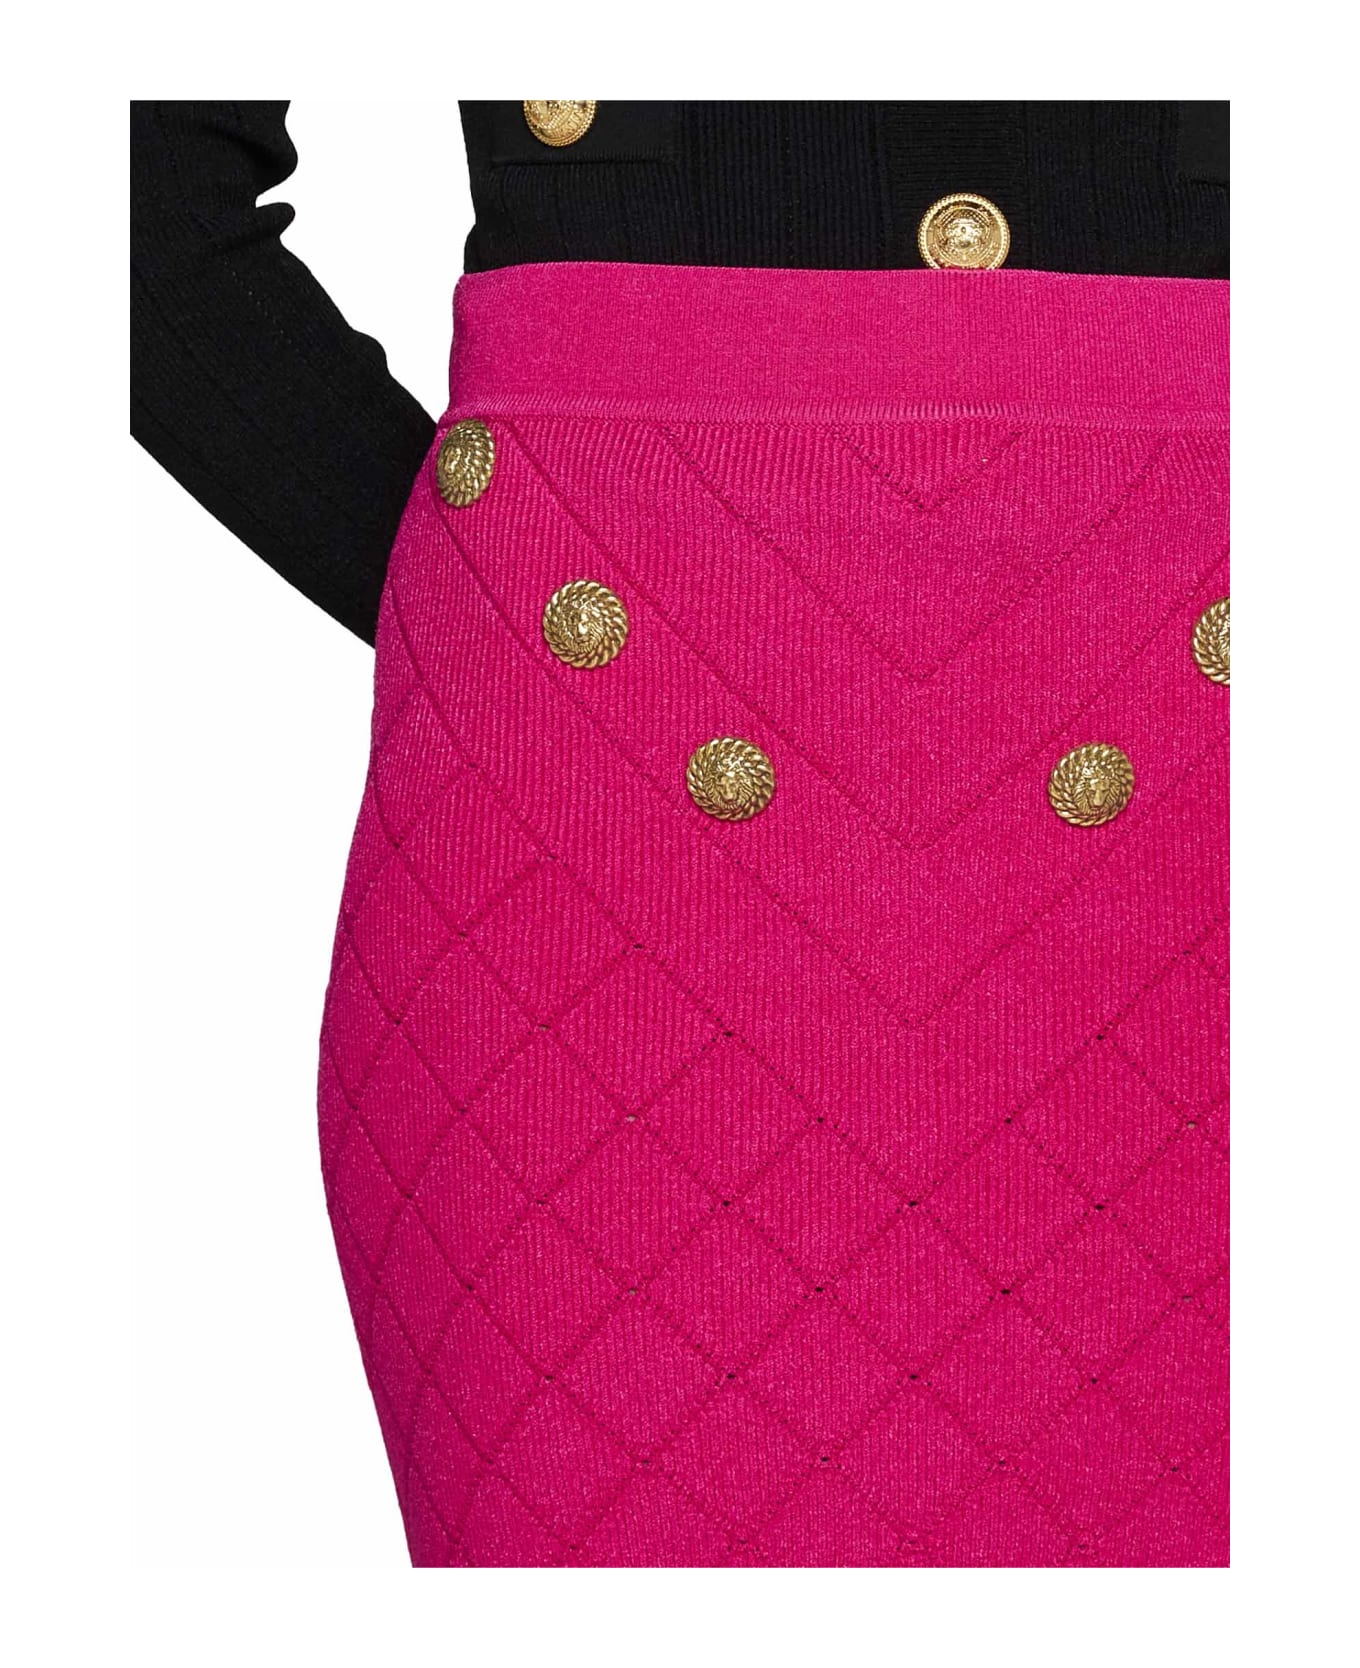 Balmain 6-button Knit Skirt - Pink スカート